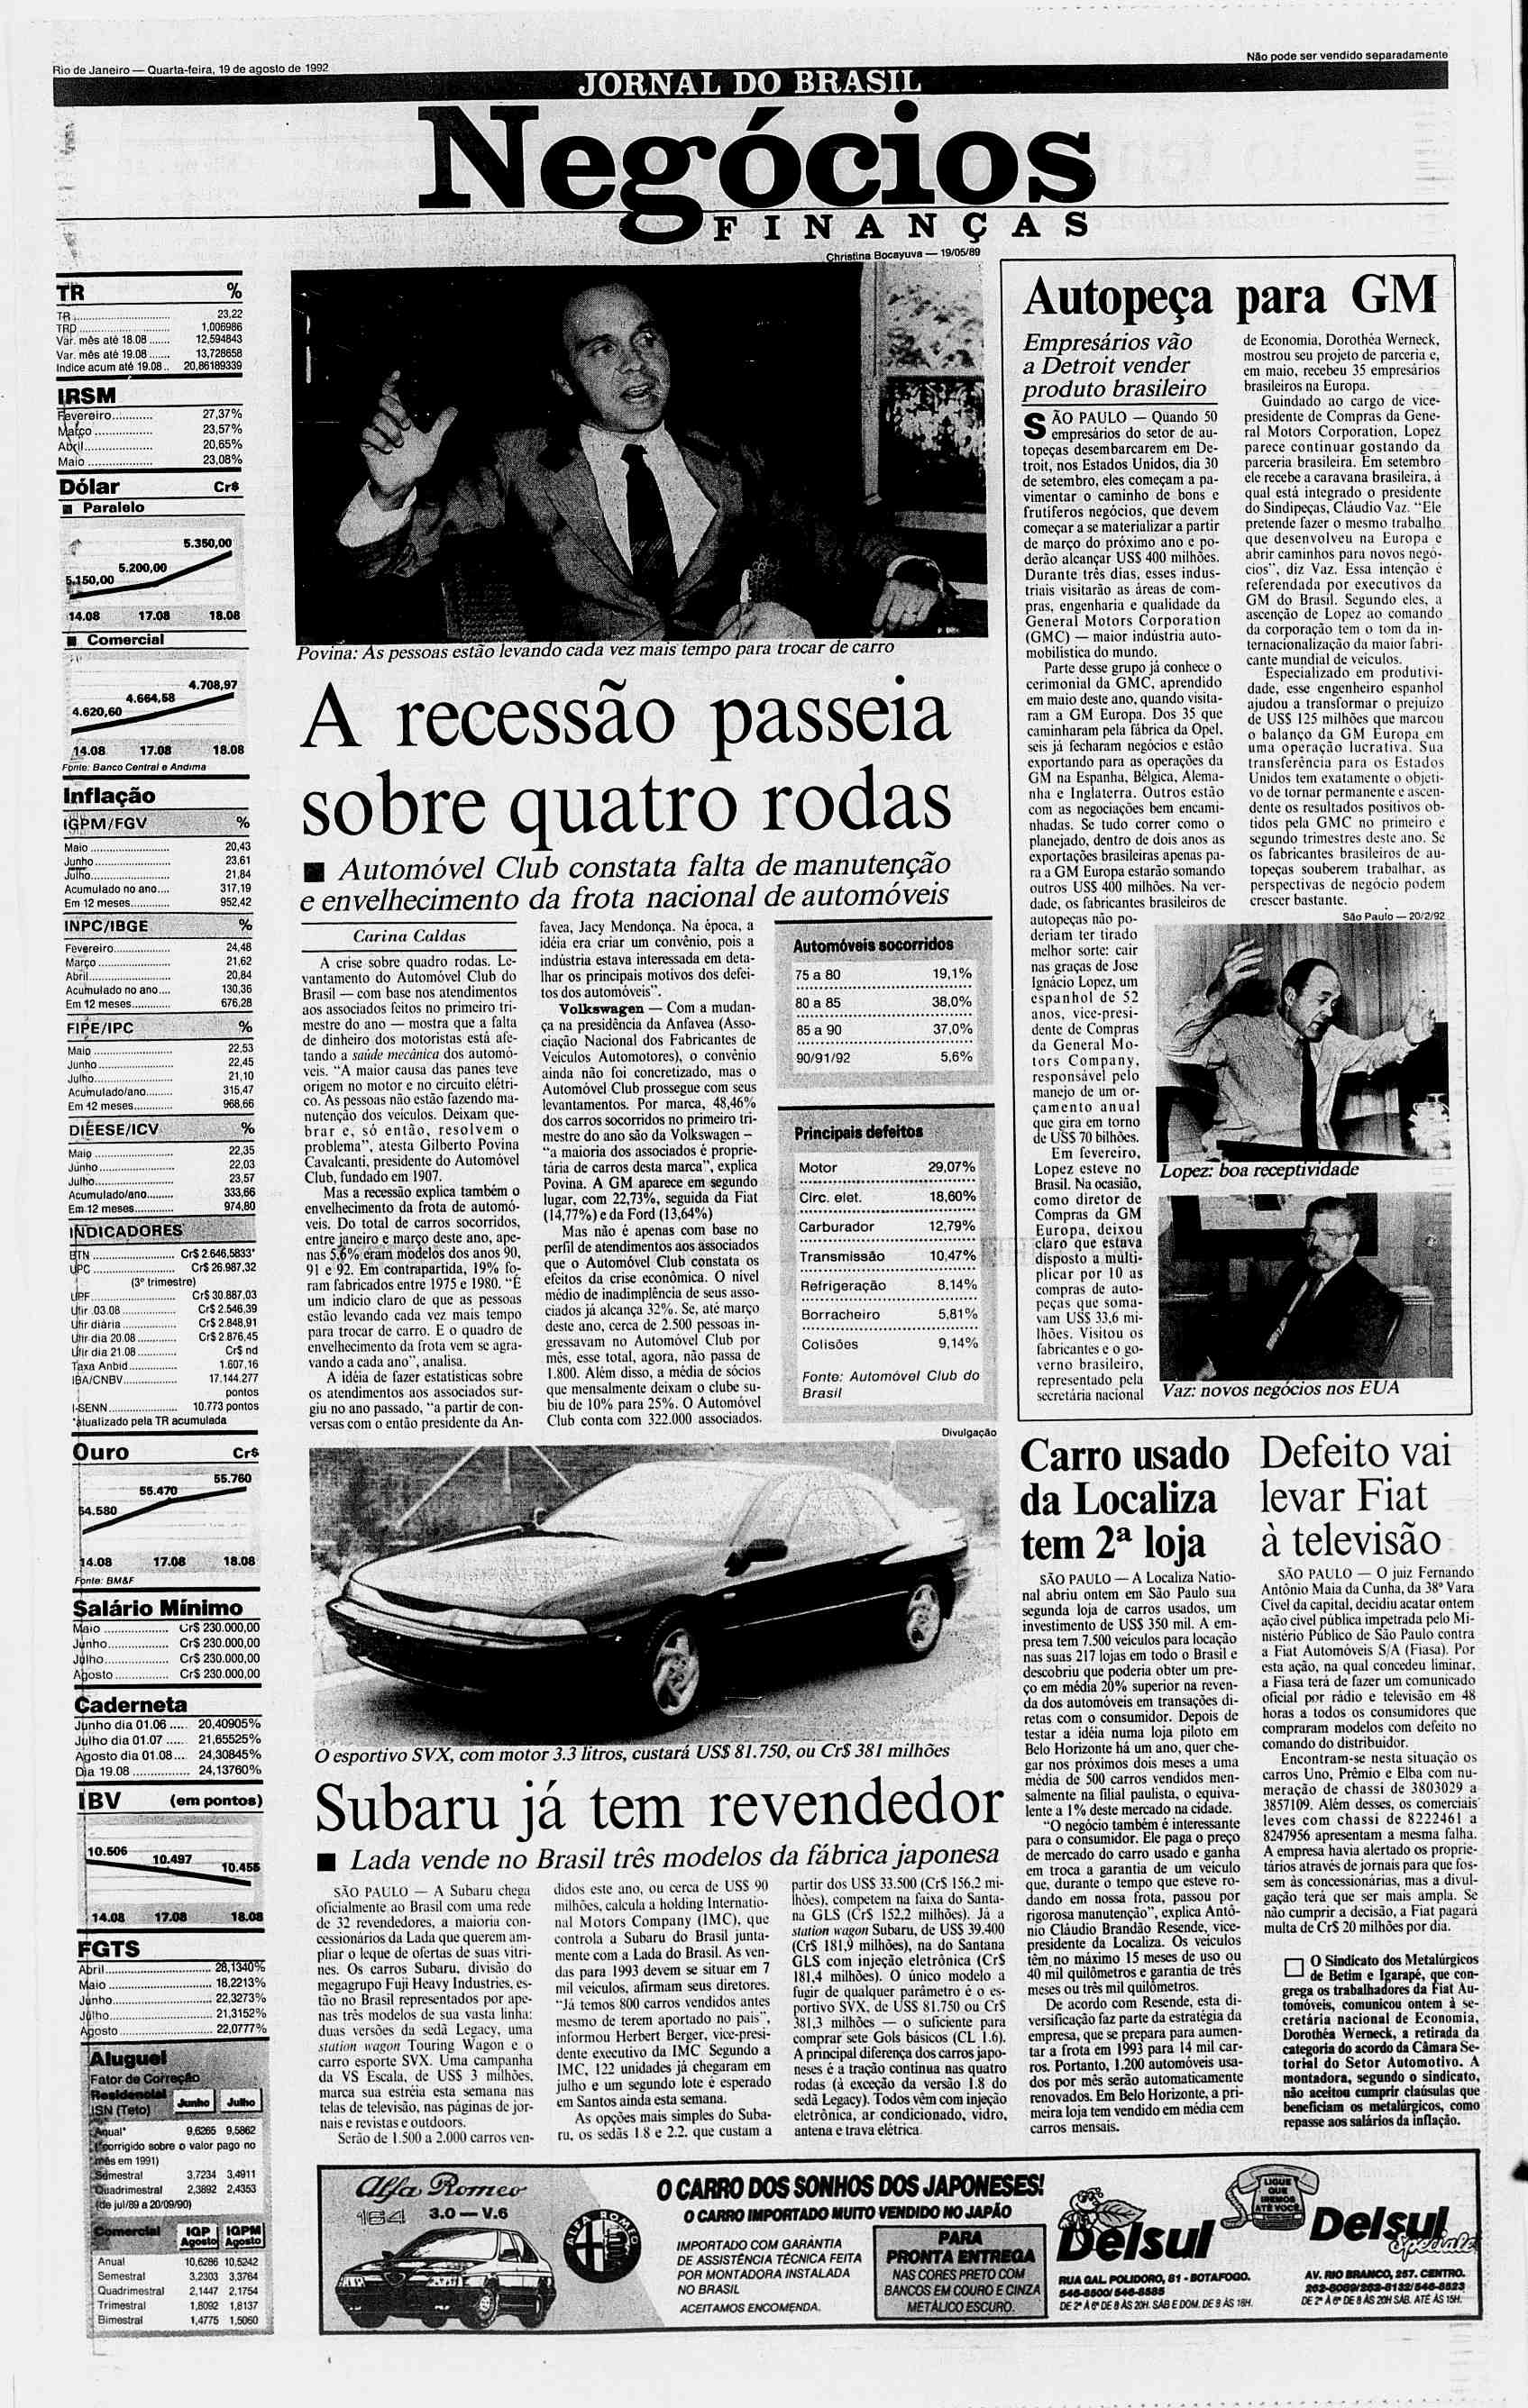 Rio de Janeiro Quarta-feira, 19 de agosto de 1992 JORNAL DO BRASL S % TR. 23,22 TPD 1,006986 Var. mss ate 18.08 